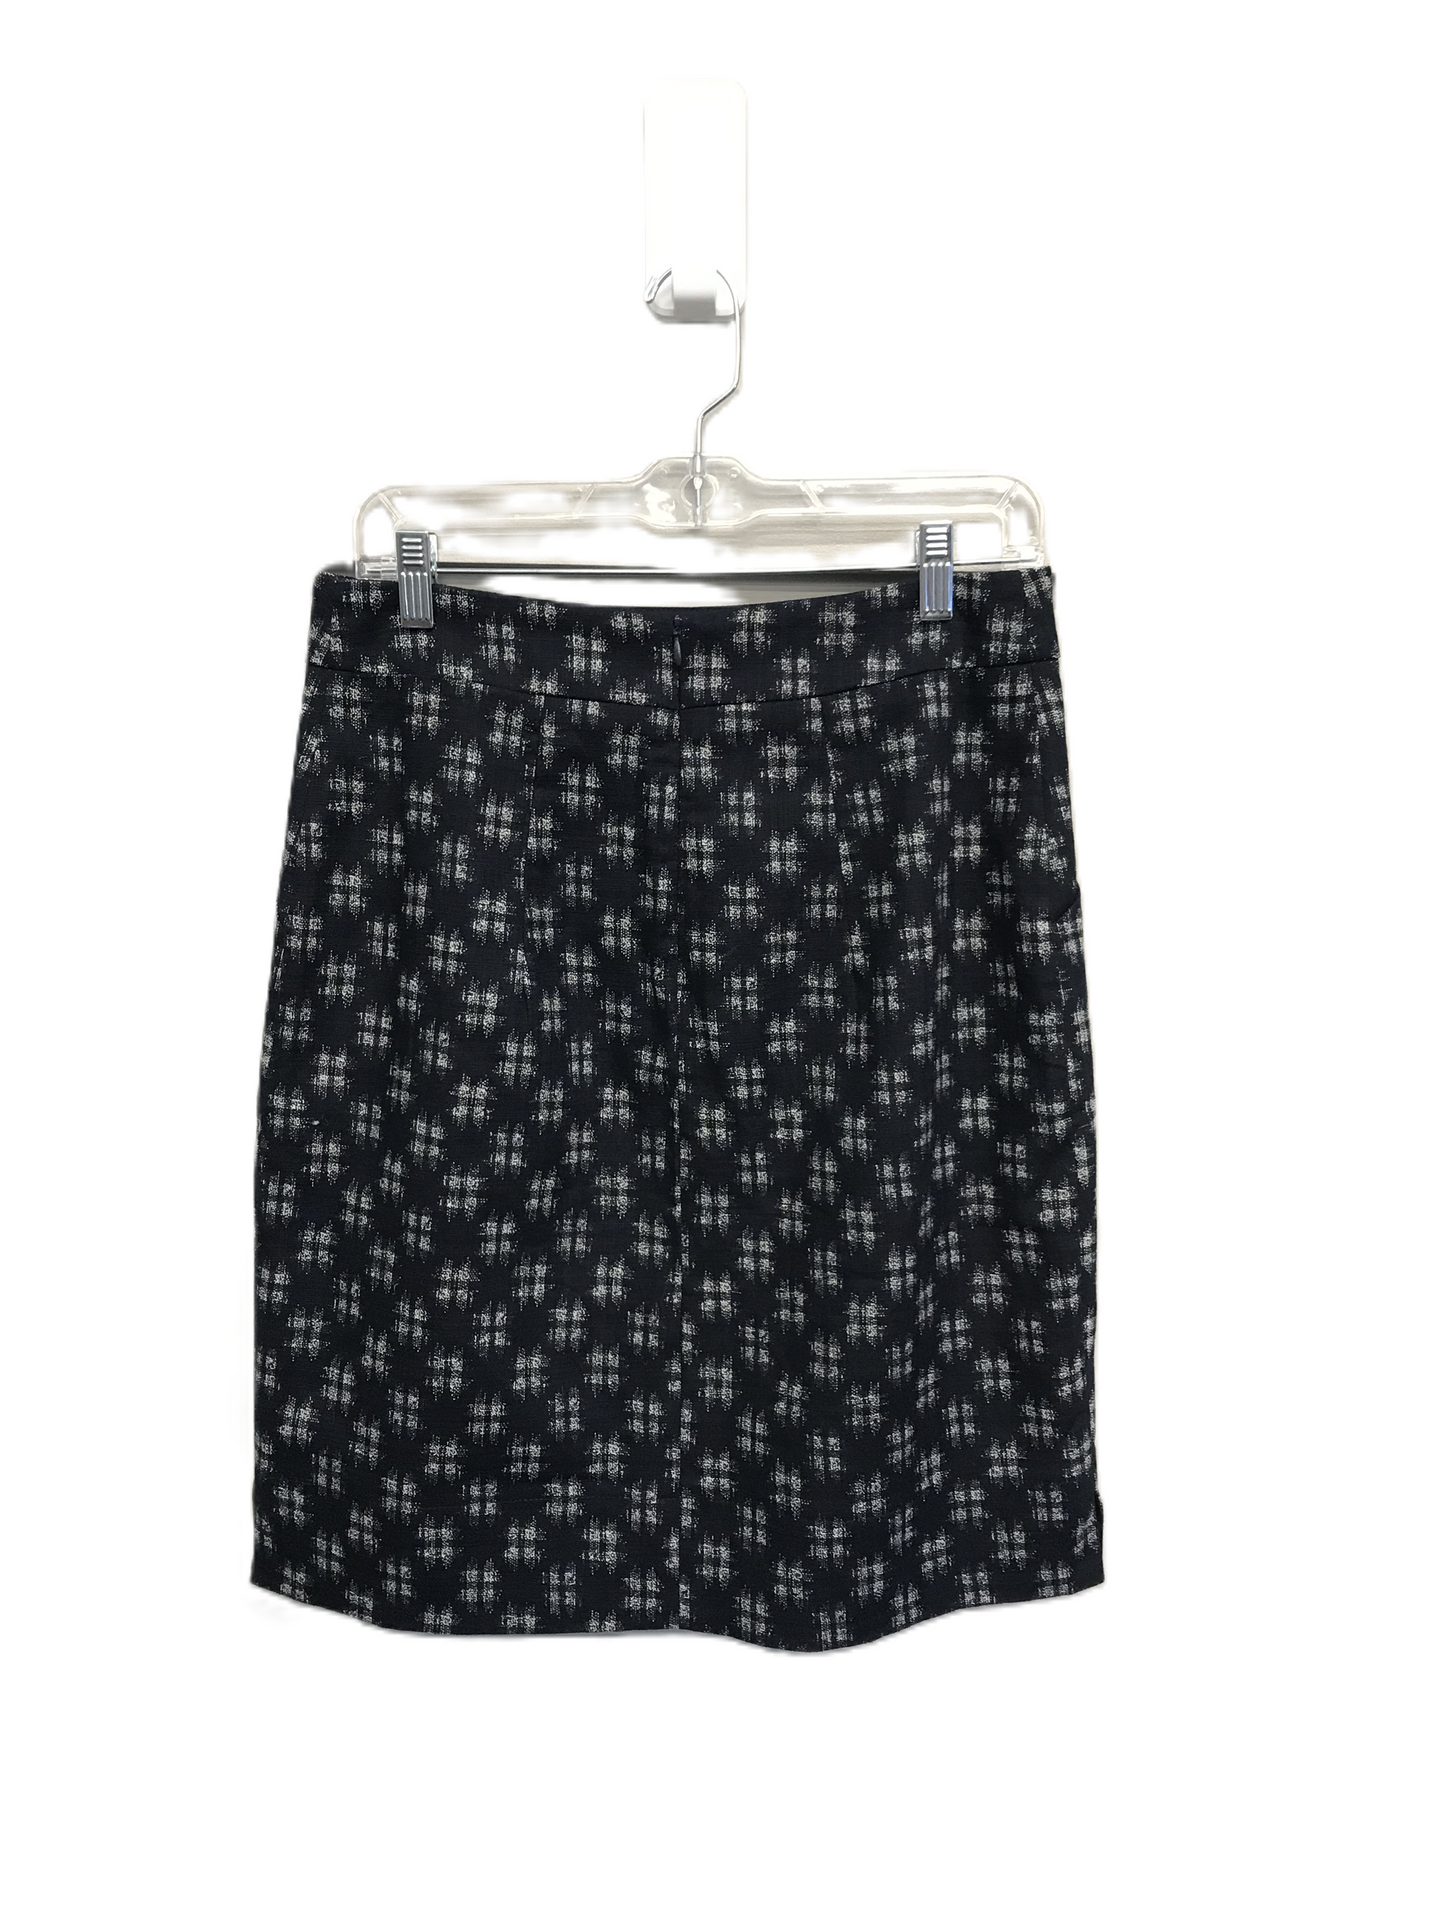 Navy Skirt Mini & Short By Jennifer Glasgow Size: 8